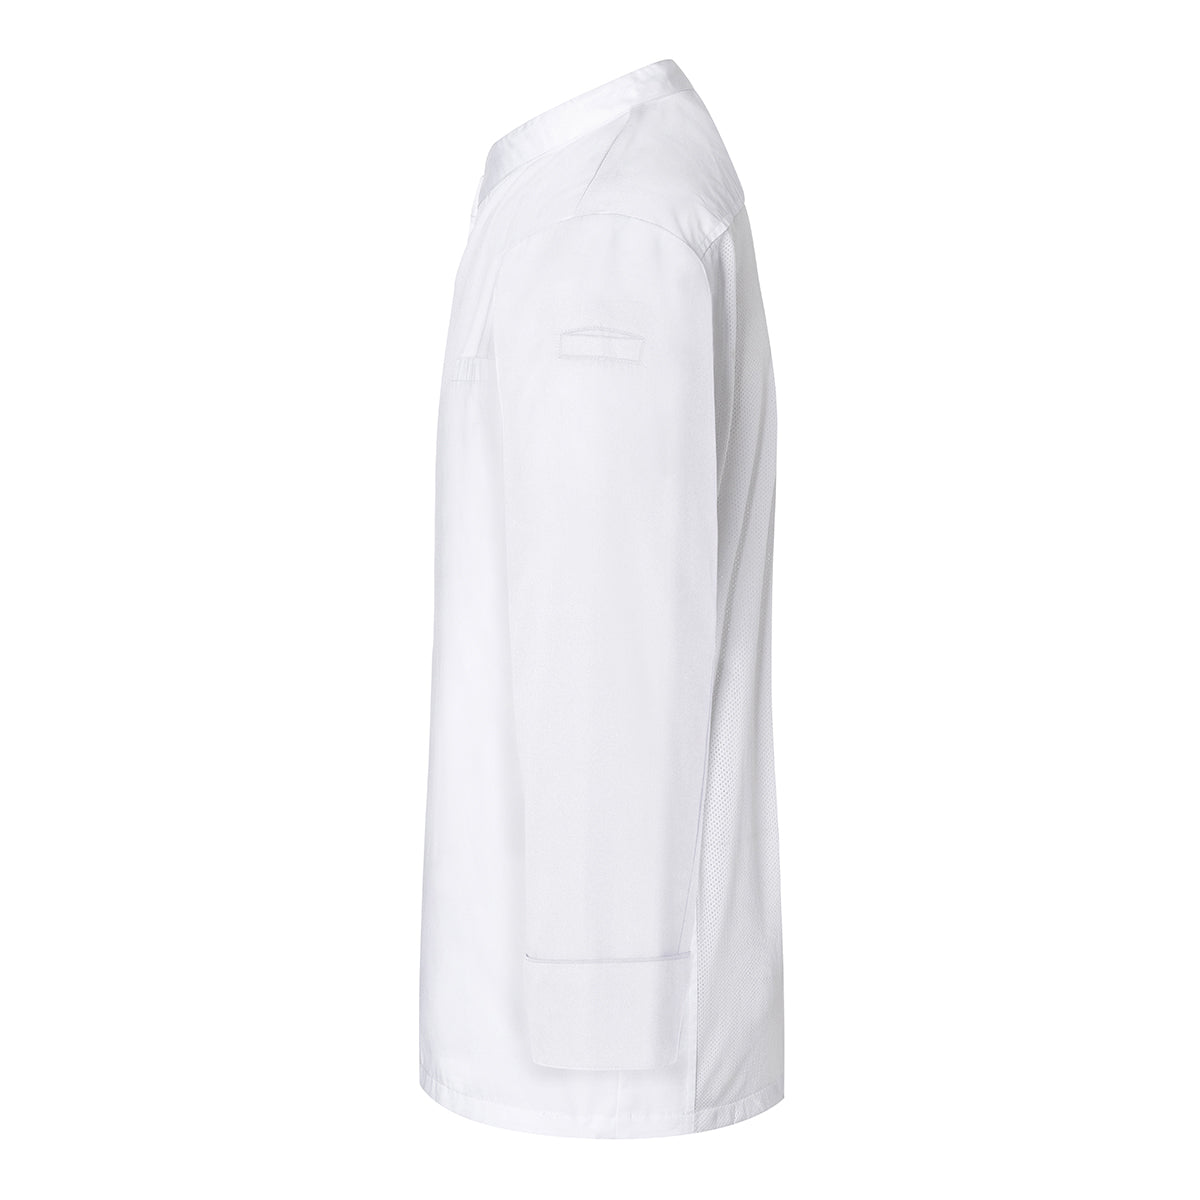 (6 stk) Karlowsky langermet skjorte - hvit - str. 3XL